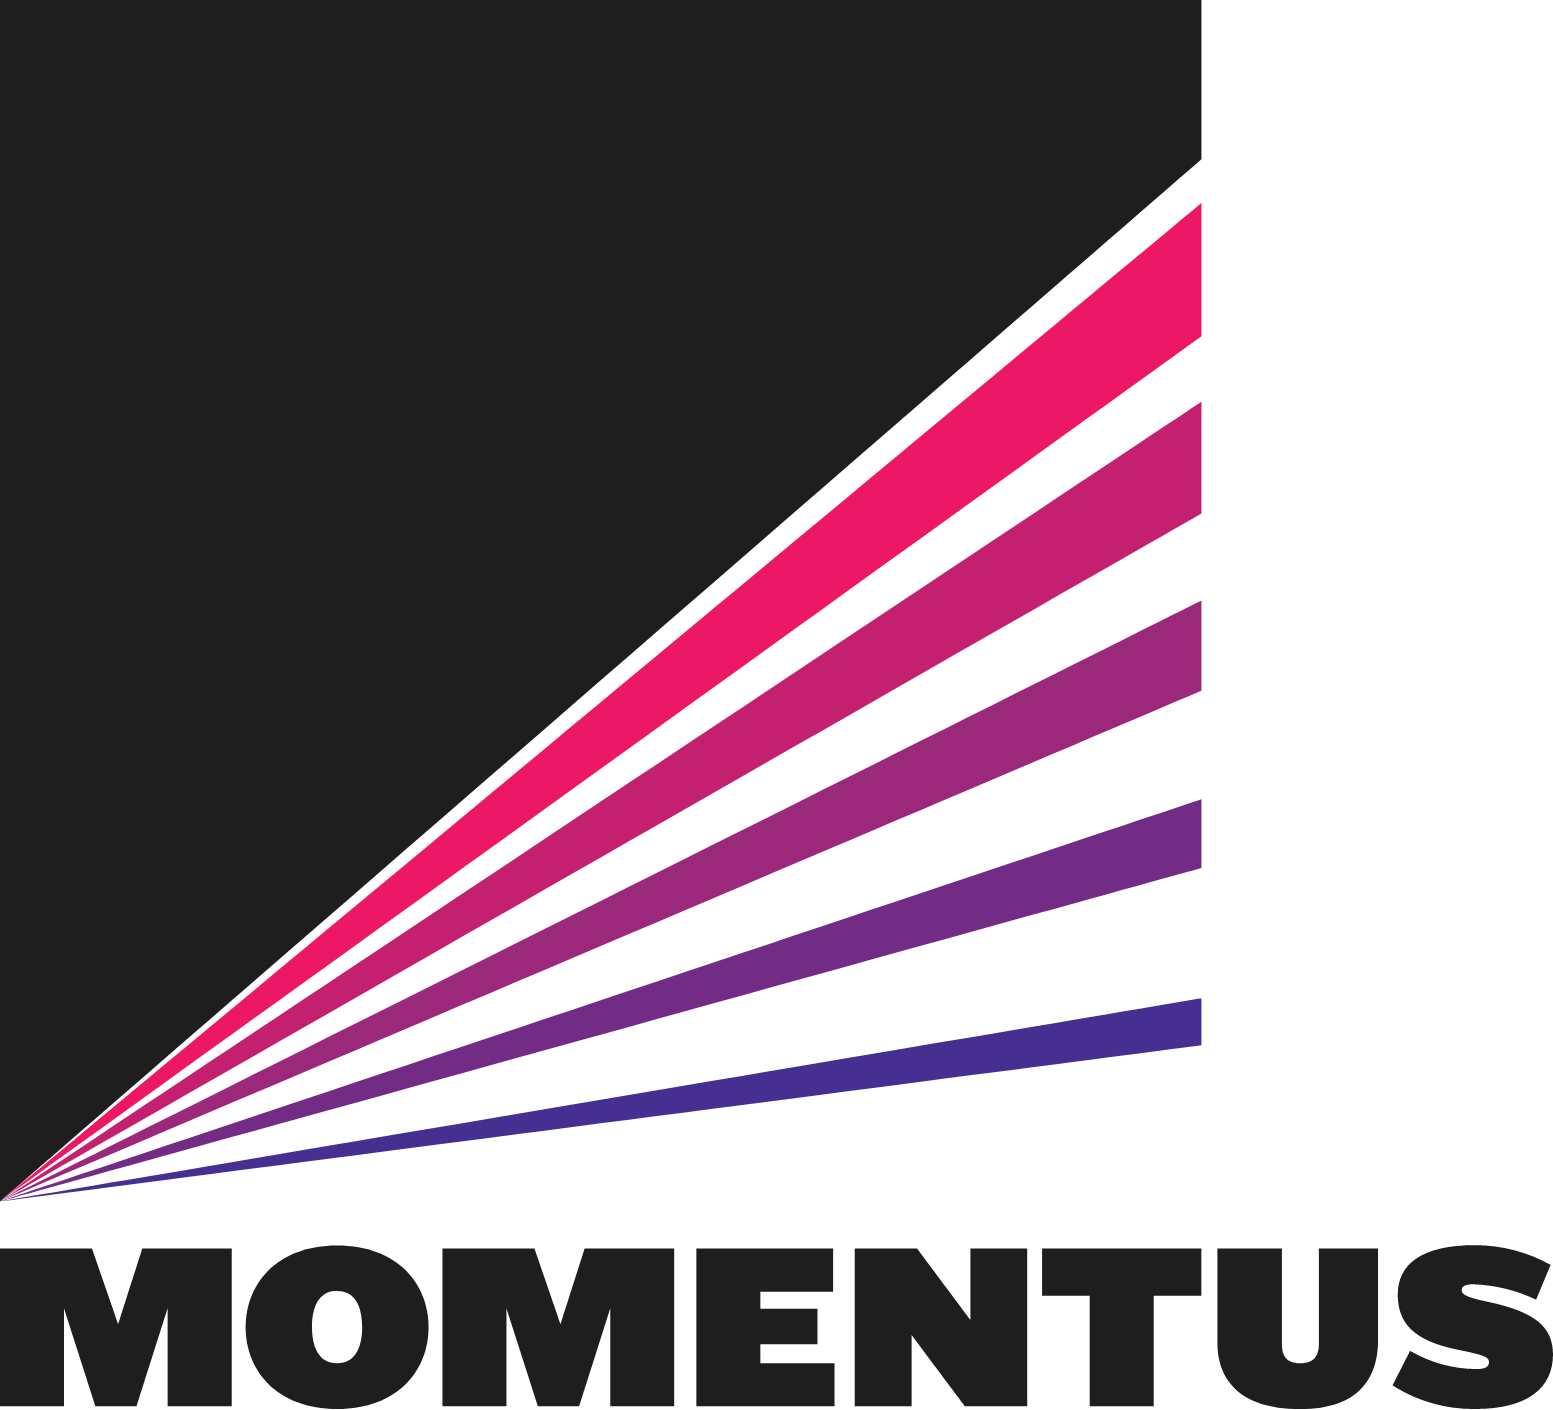 Momentus logo large (transparent PNG)